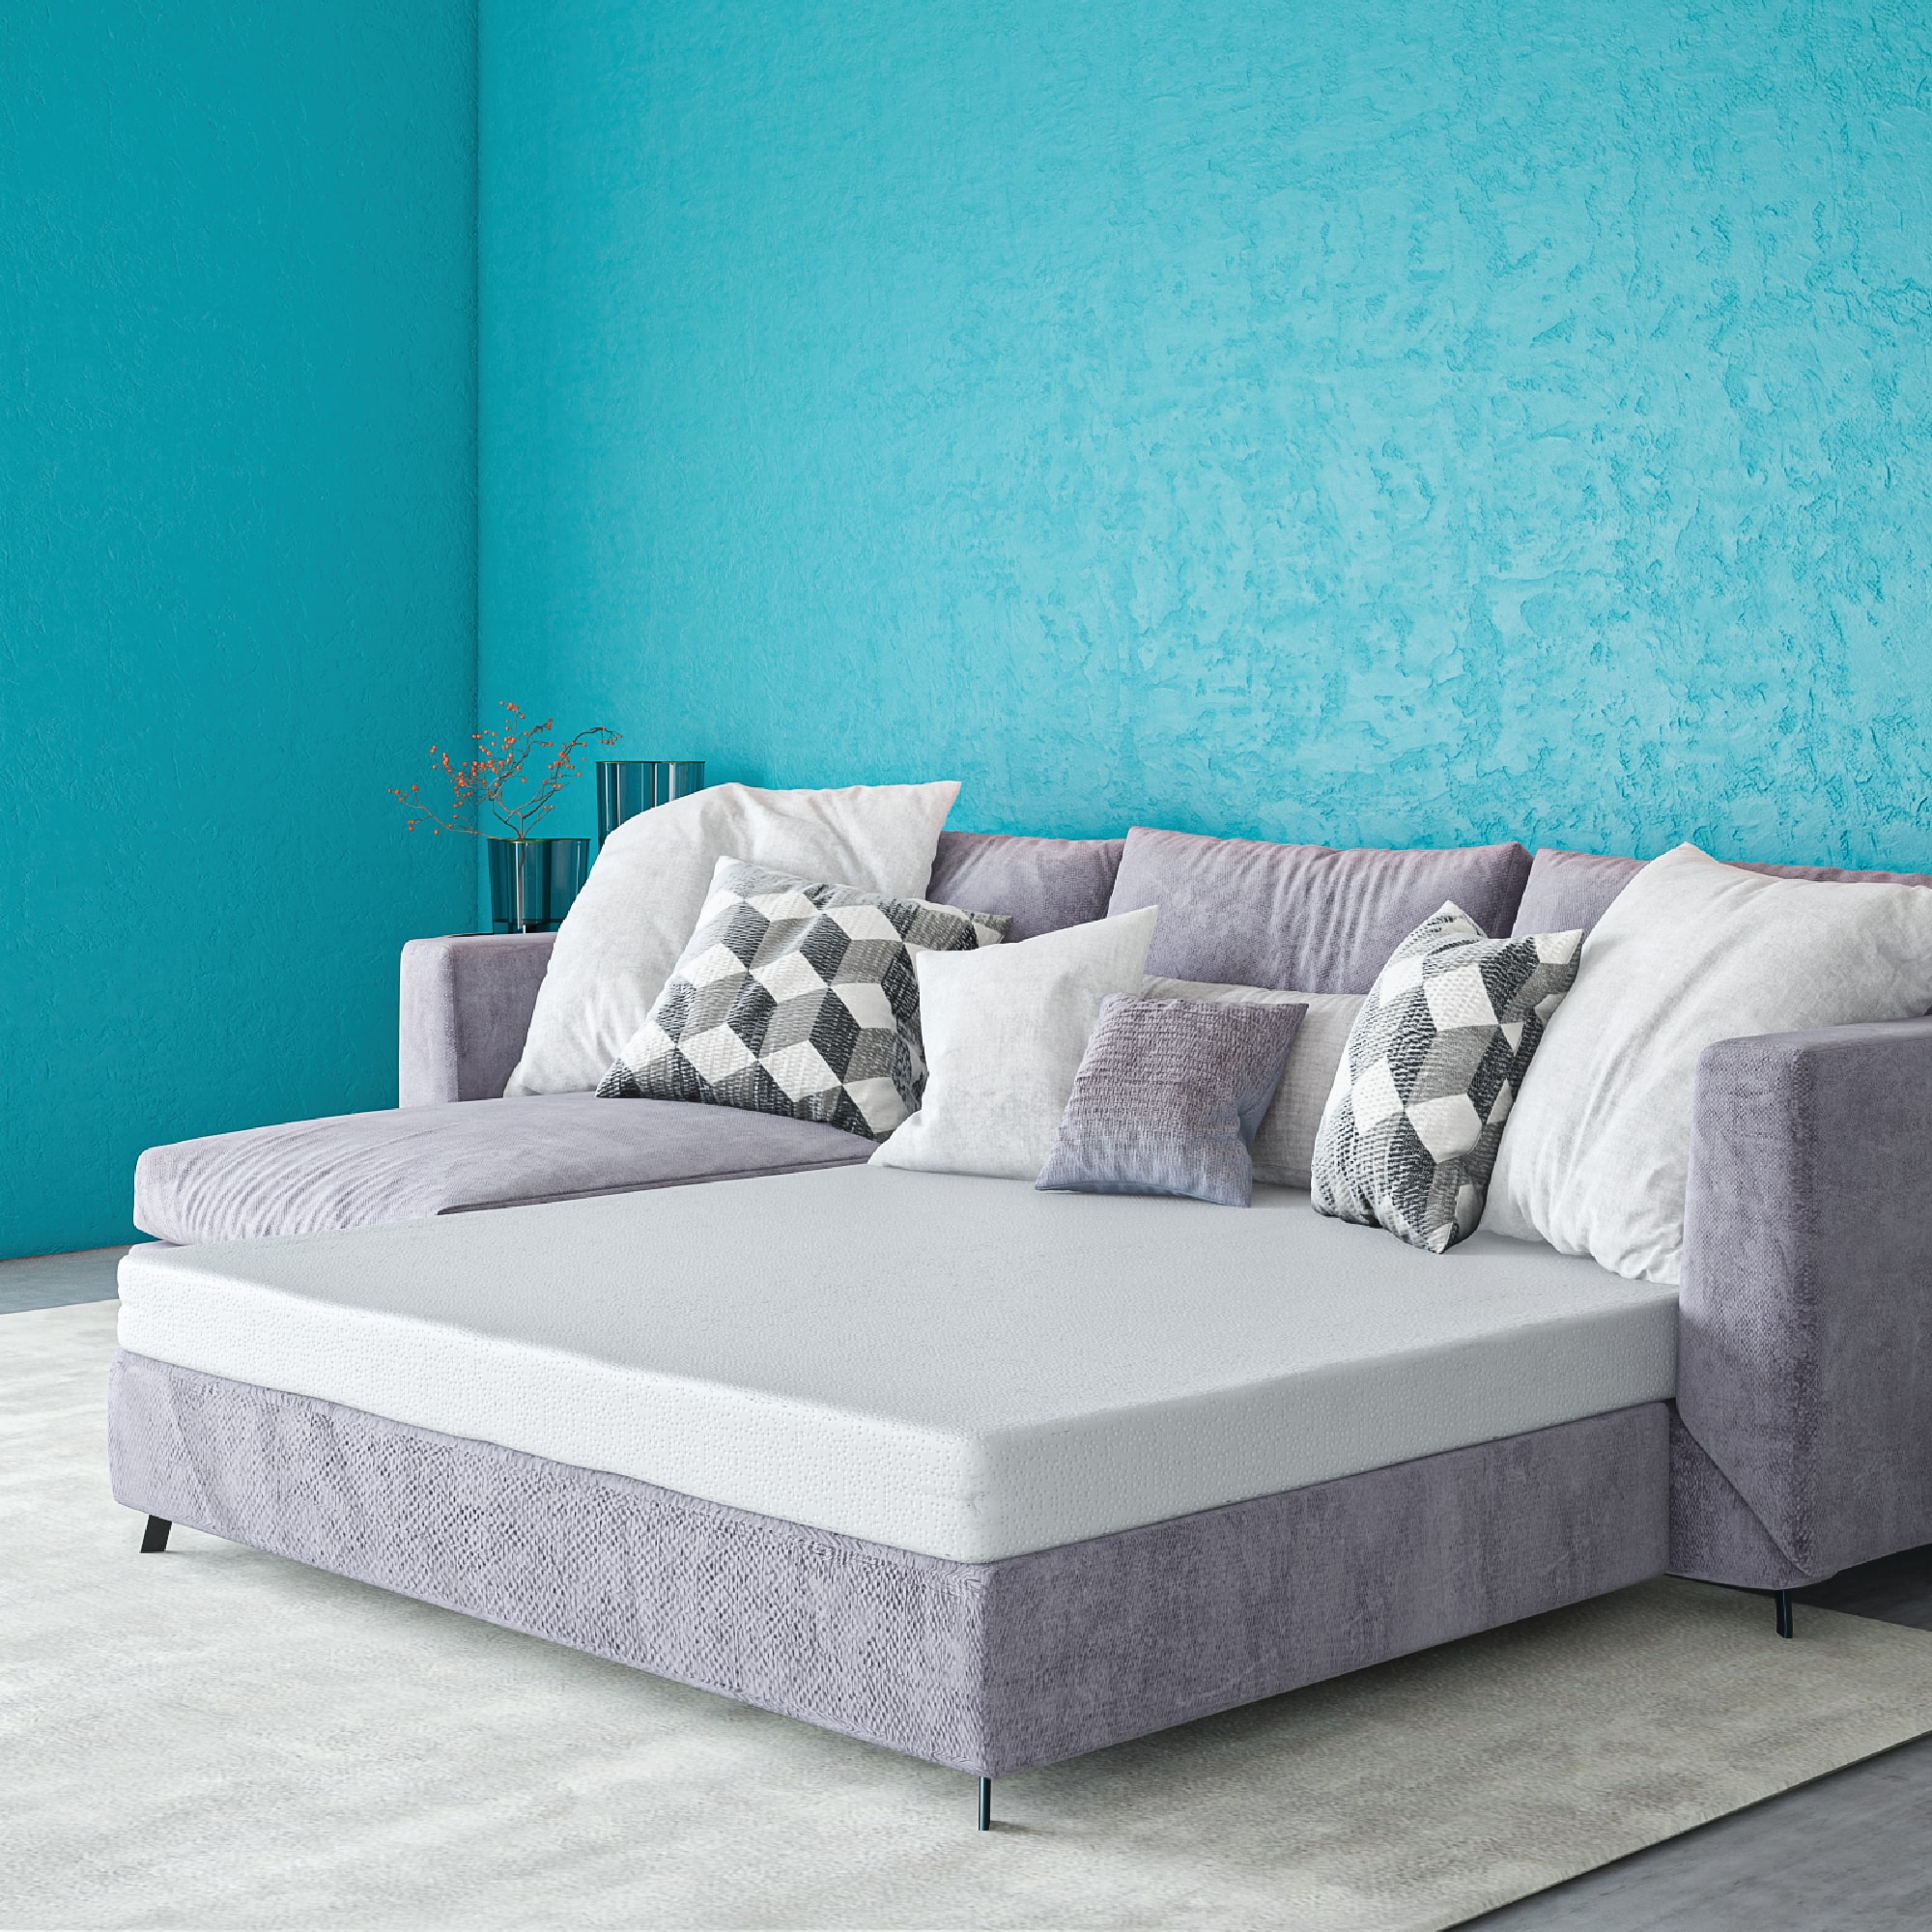 Cool Gel 4" Memory Foam Replacement Sleep Sofa Bed Mattress, Queen - image 3 of 13